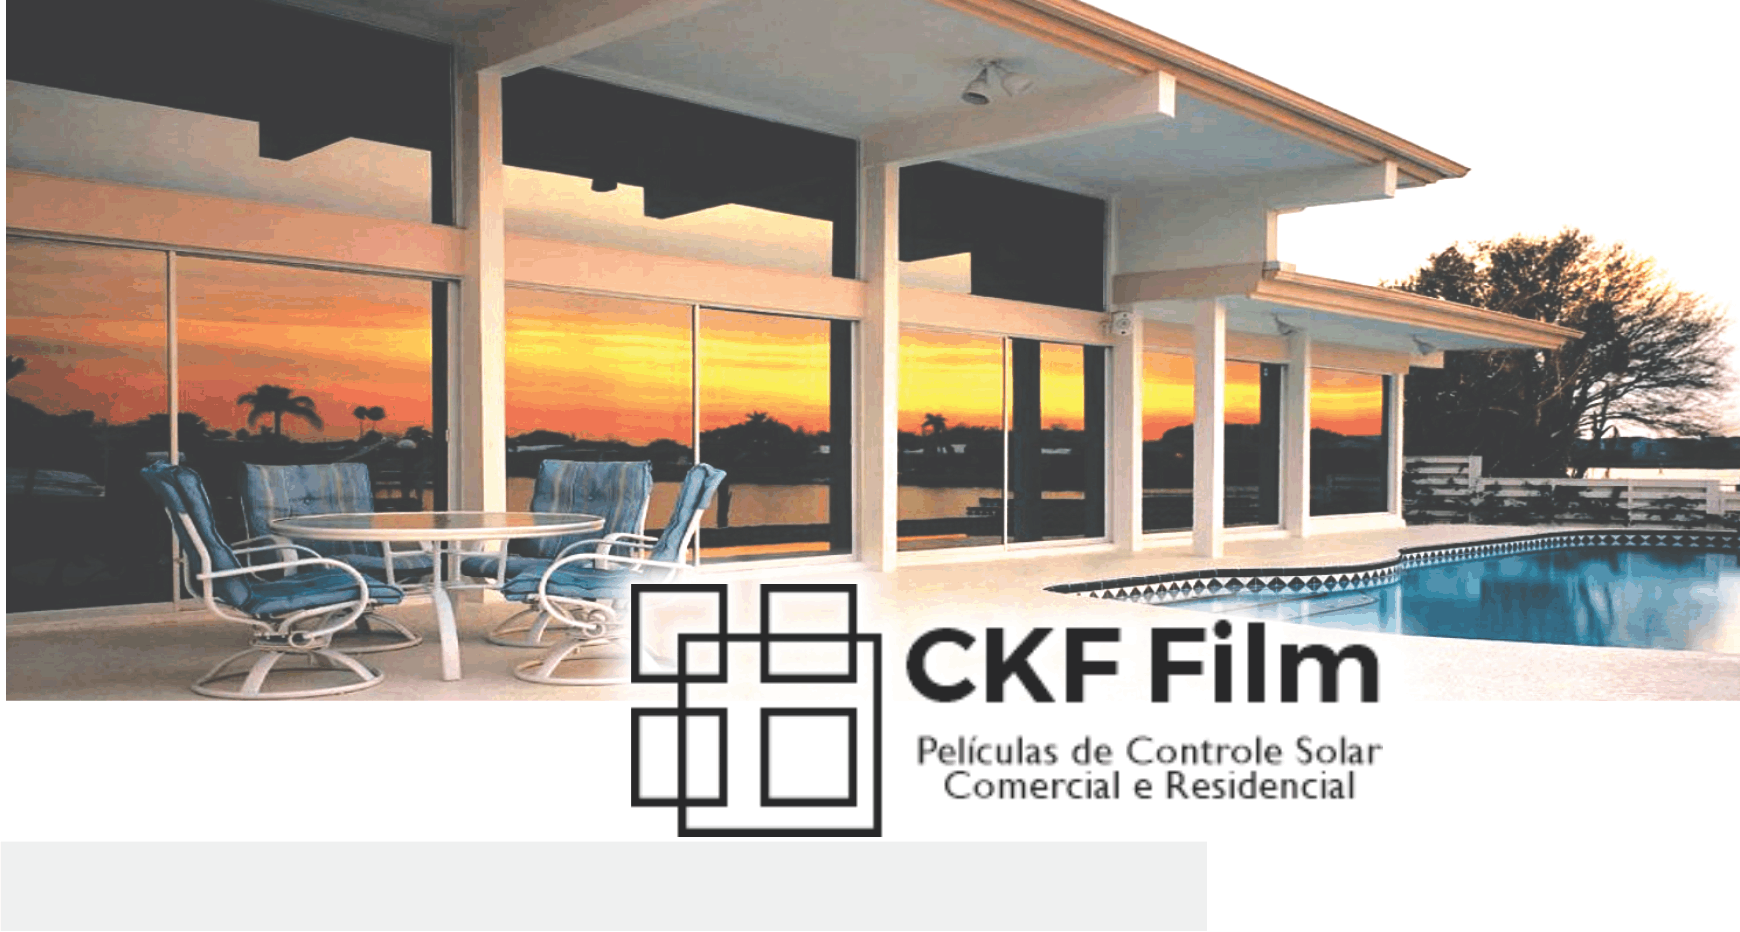 CKF Filme Películas de Controle Solar - Comercial e Residencial      Fones: (41) 98511-6126 / (41) 99514-6065